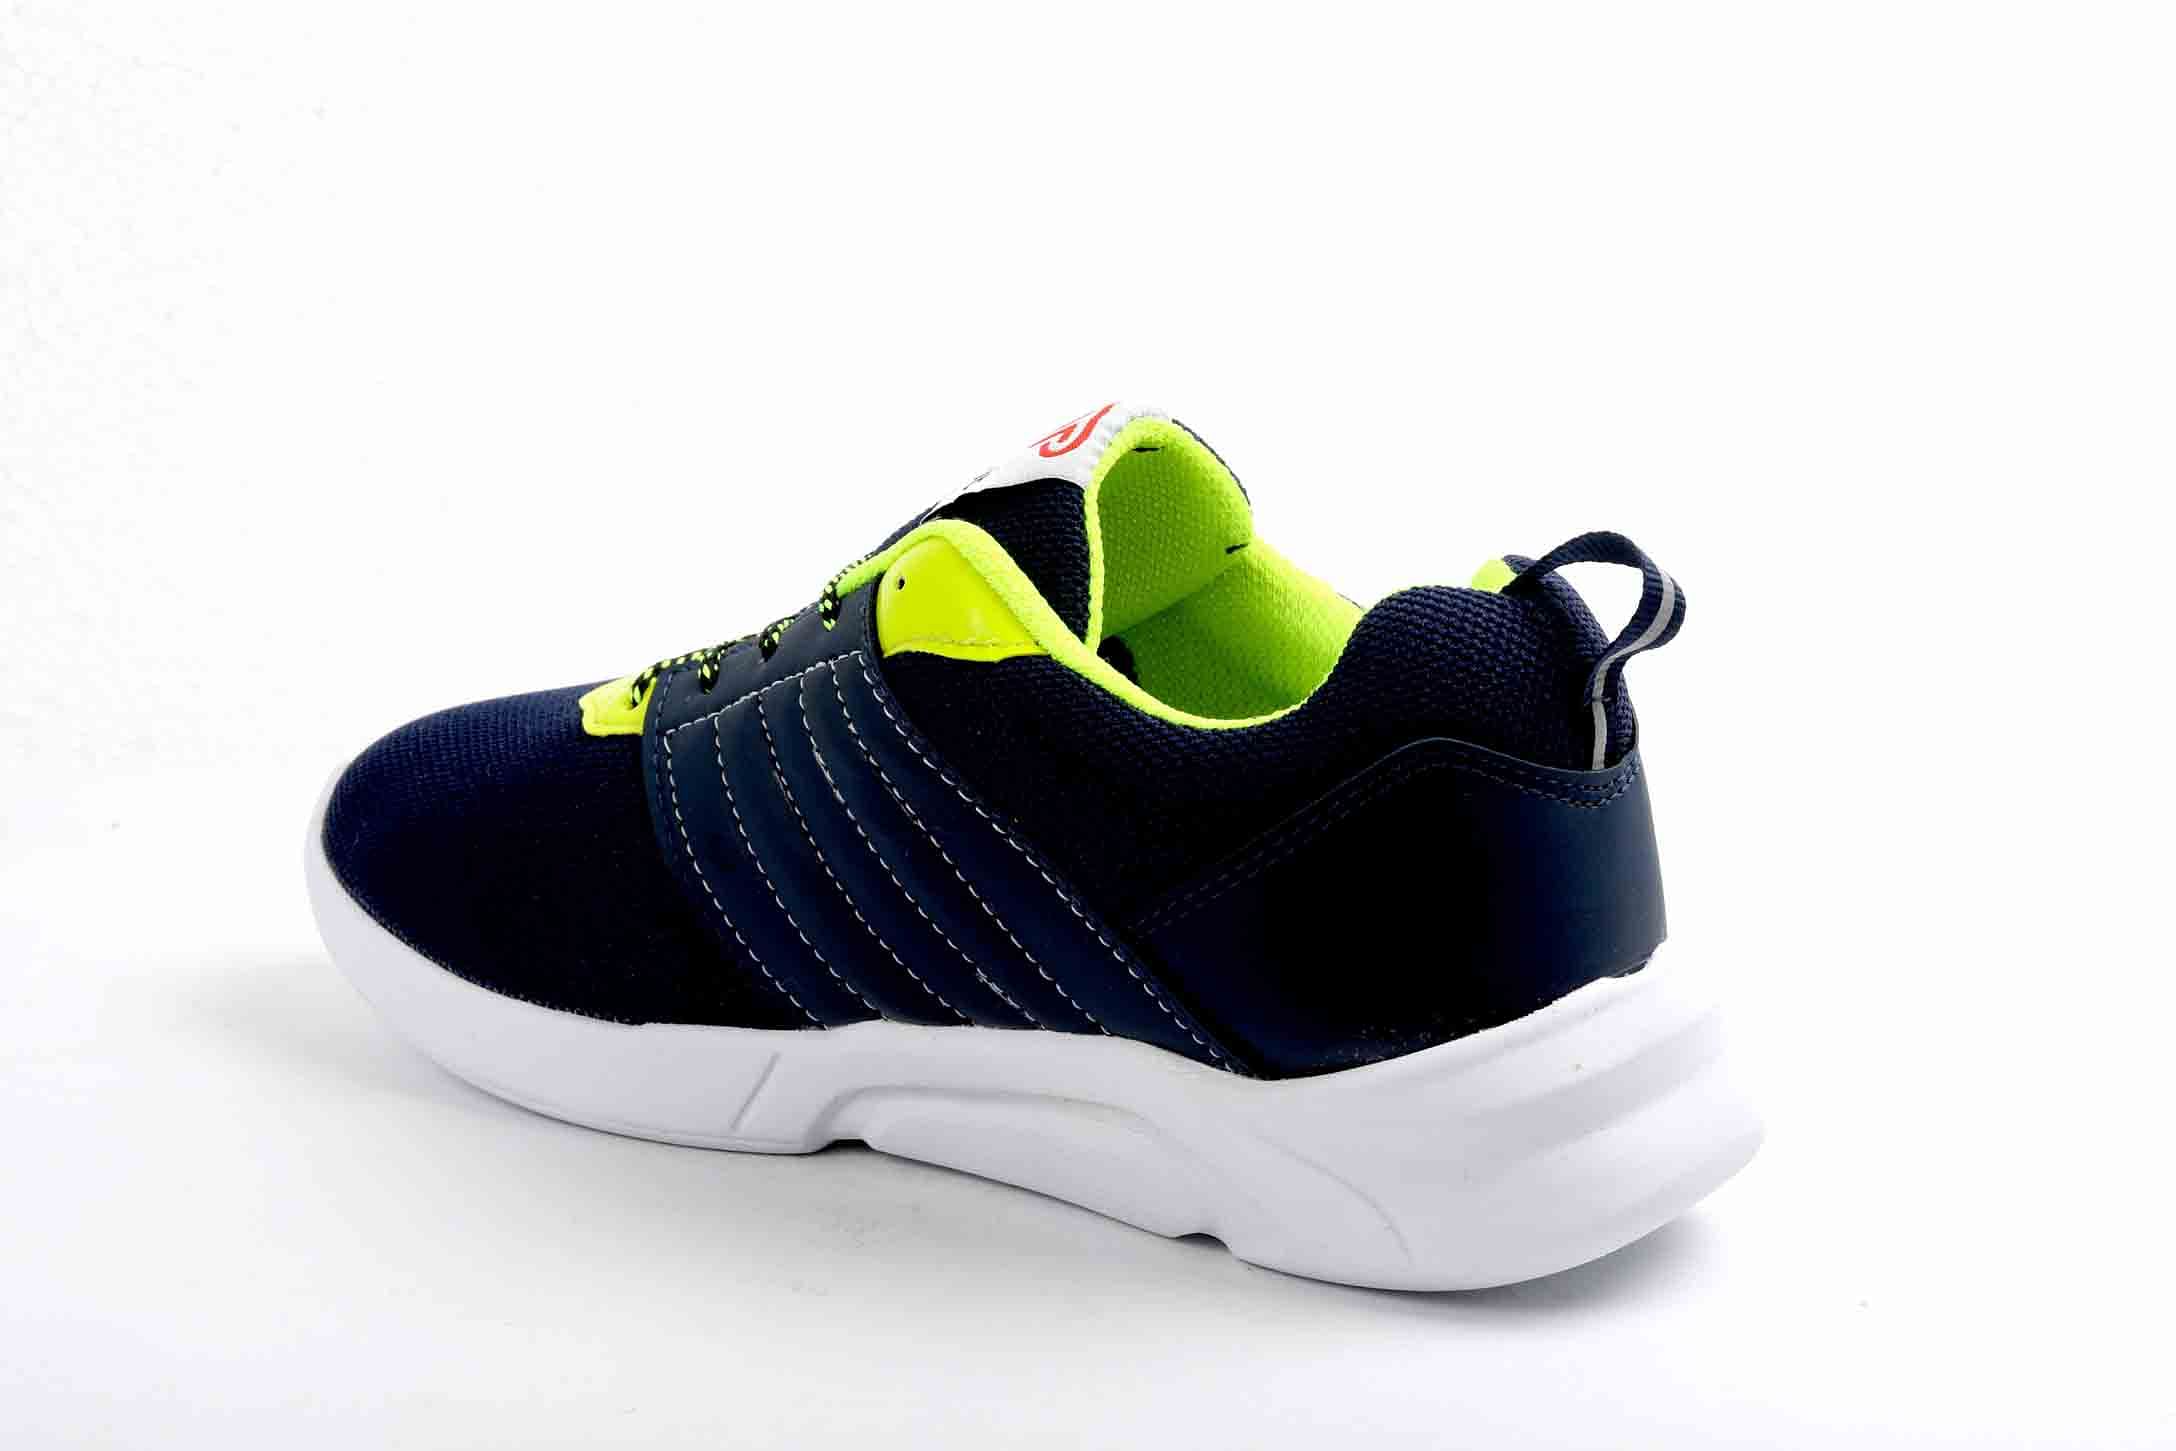 Pair-it Men's Sports Shoes - Blue - LZ-Presto097